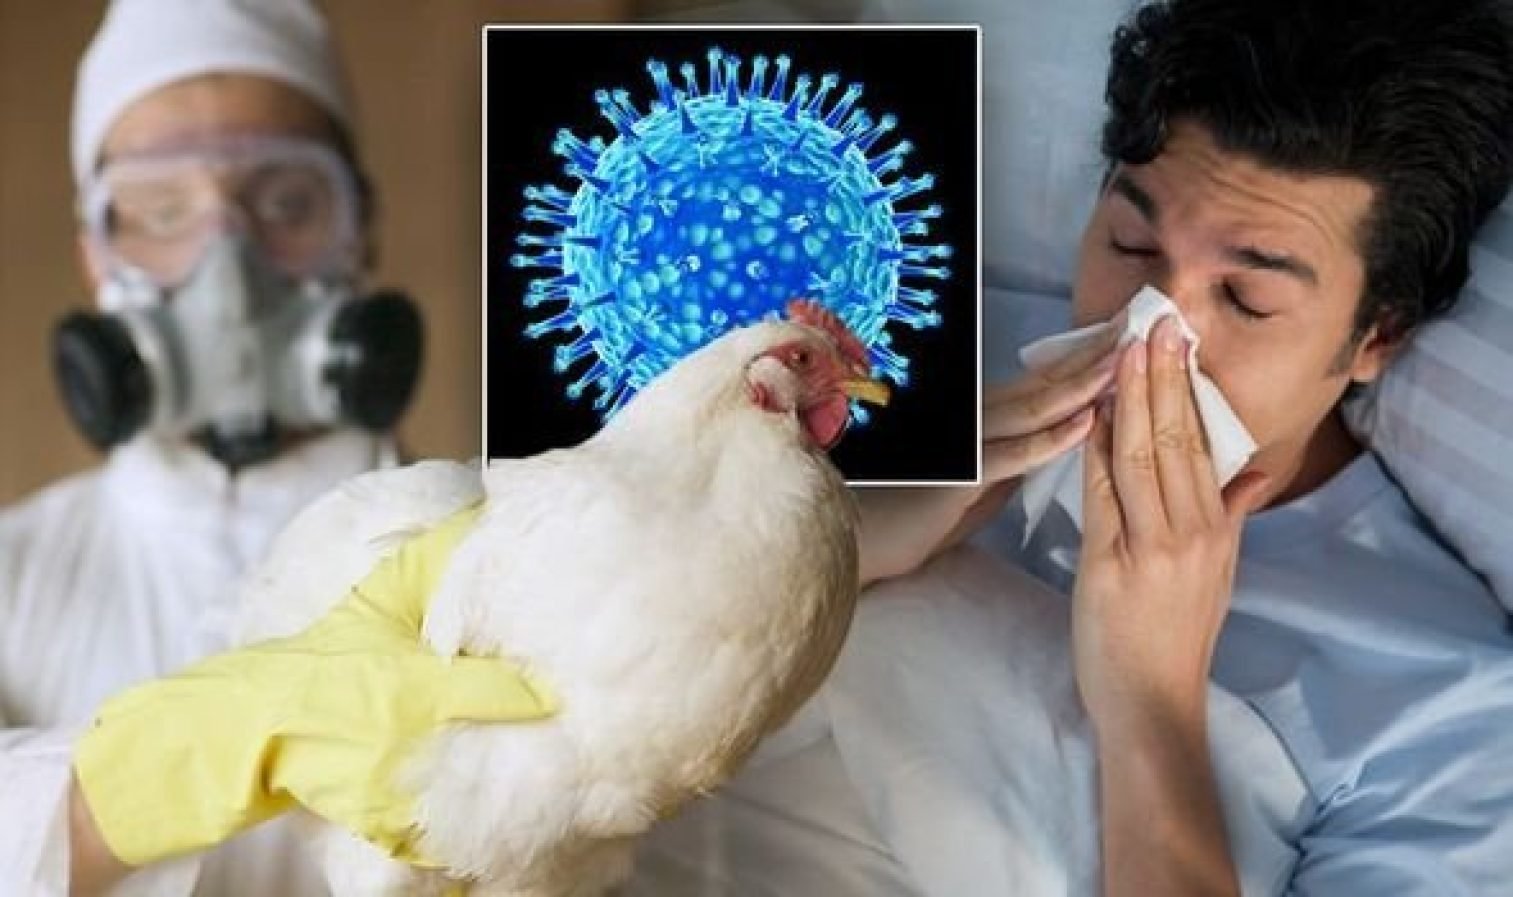  OMS: Riscul de gripă aviară H5N1 la oameni rămâne scăzut, dar trebuie să fim pregătiţi